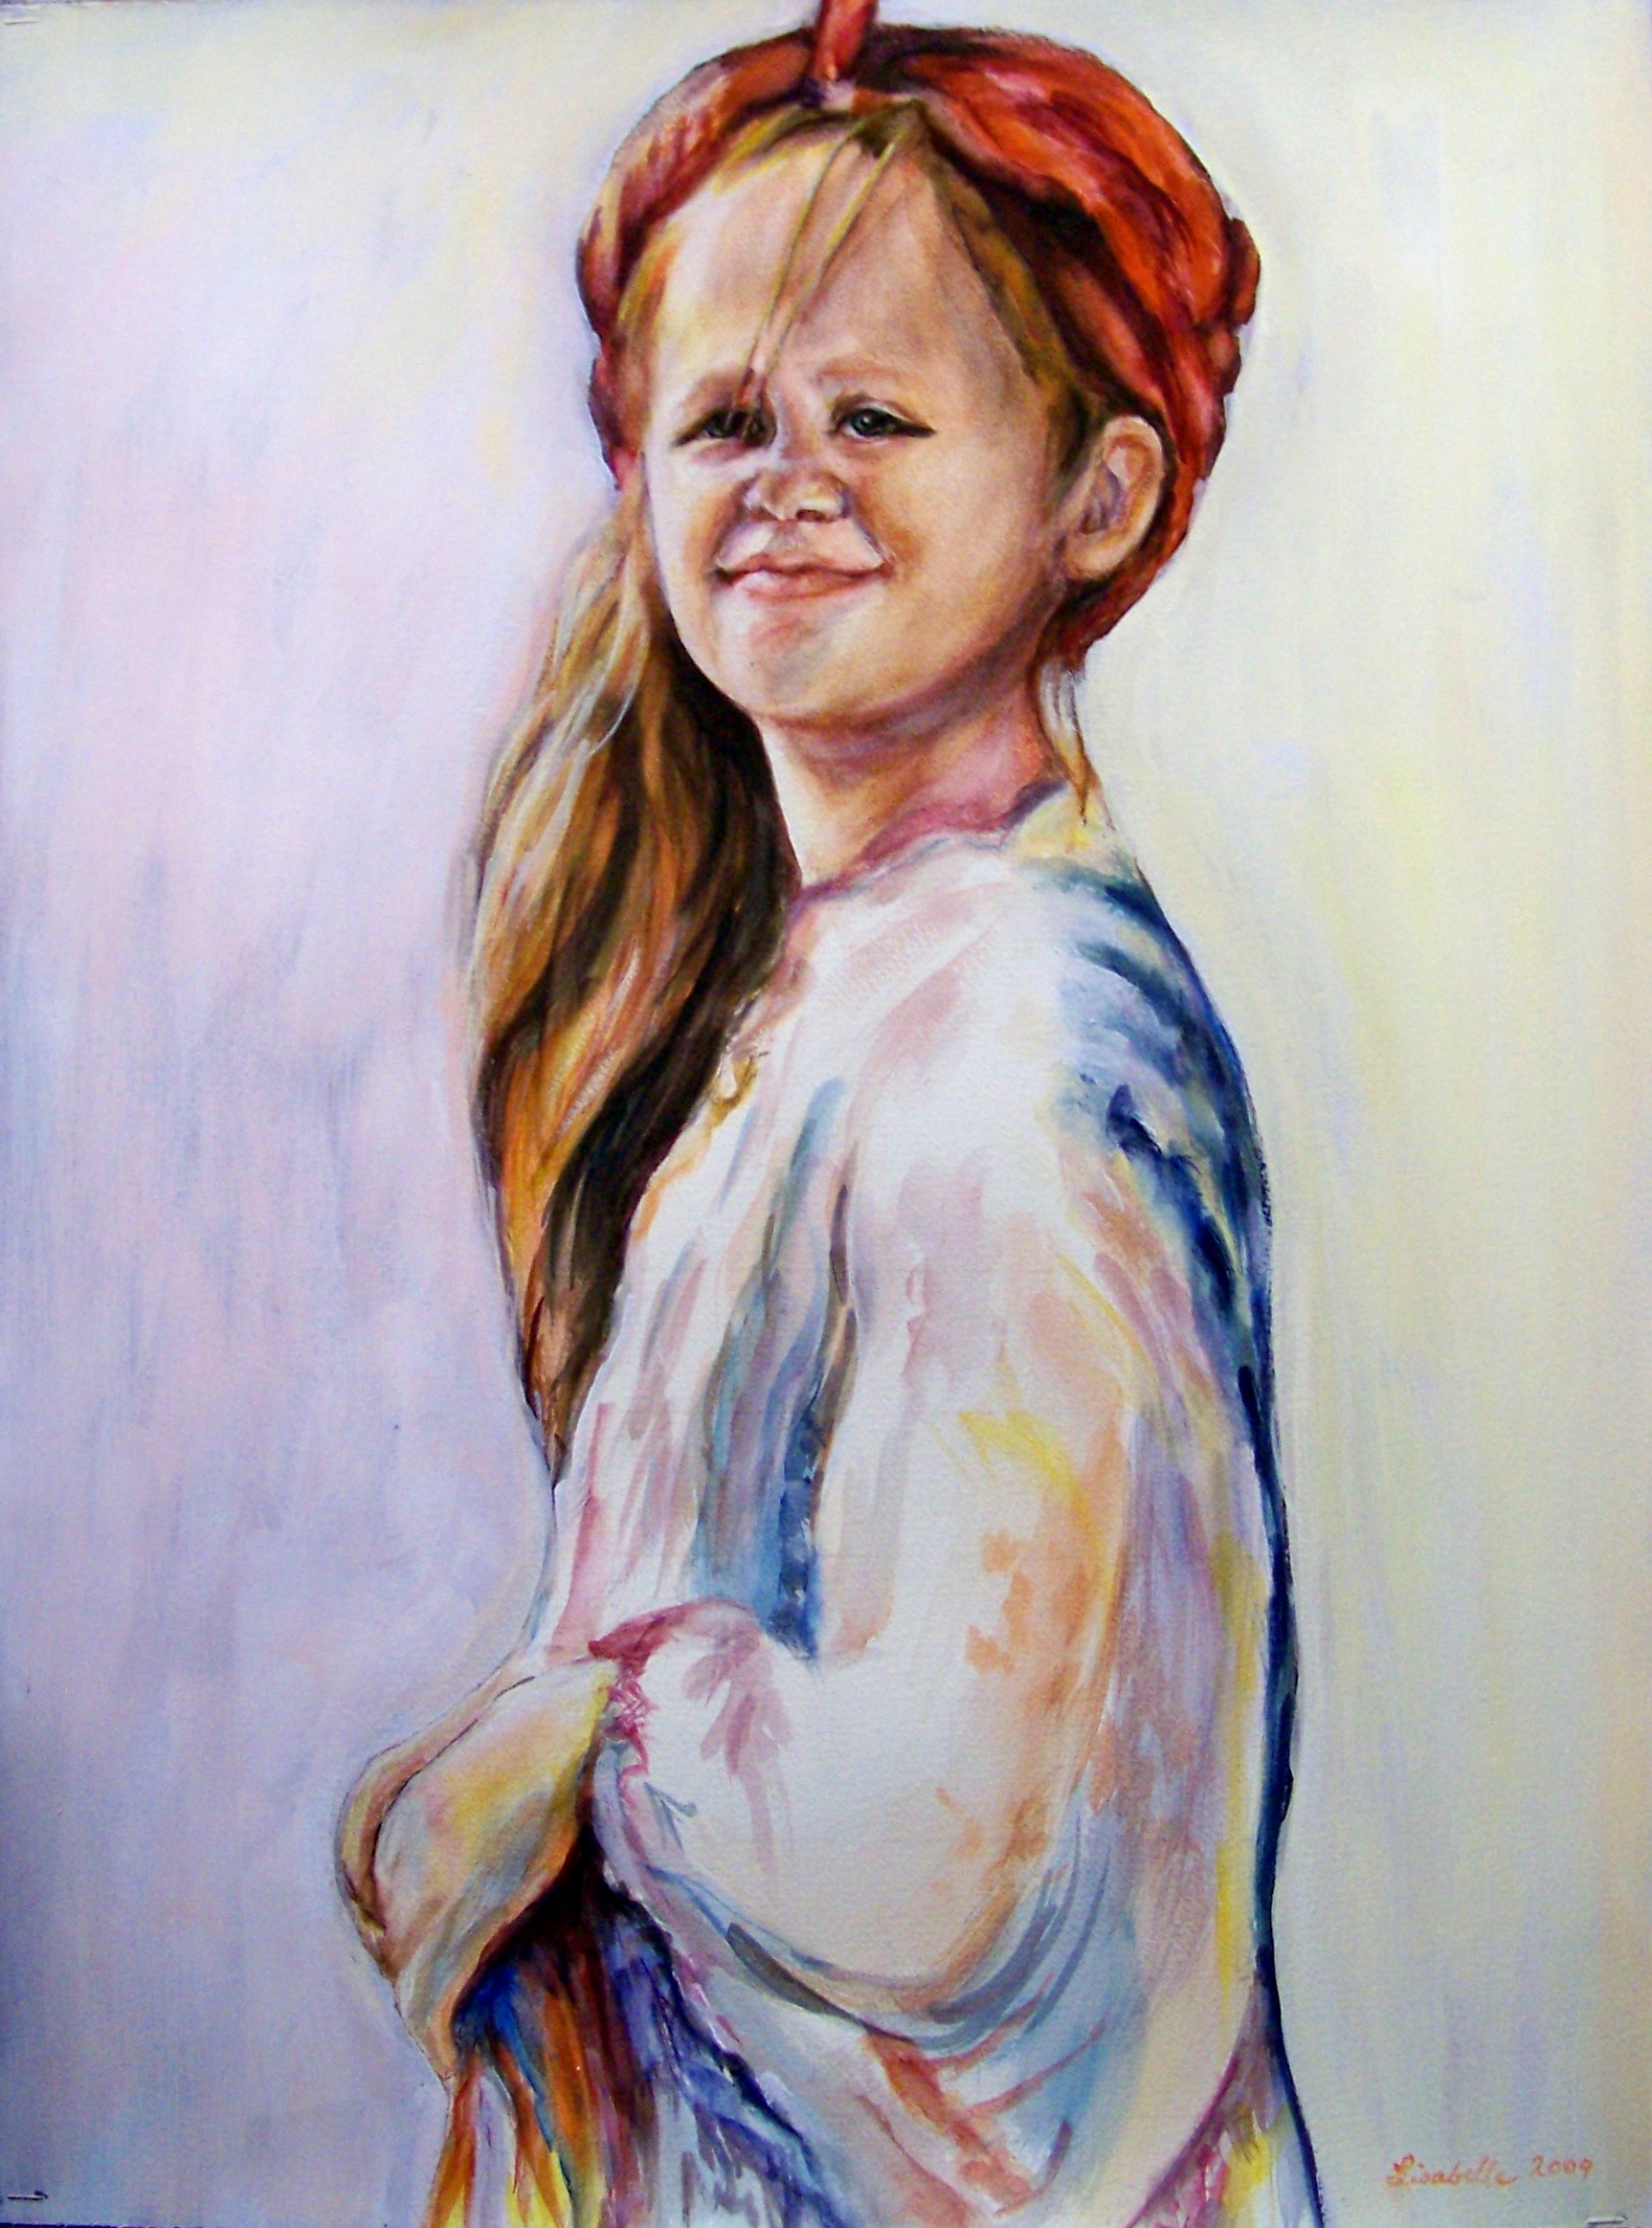 Moran a watercolor portrait by Lisabelle 2009